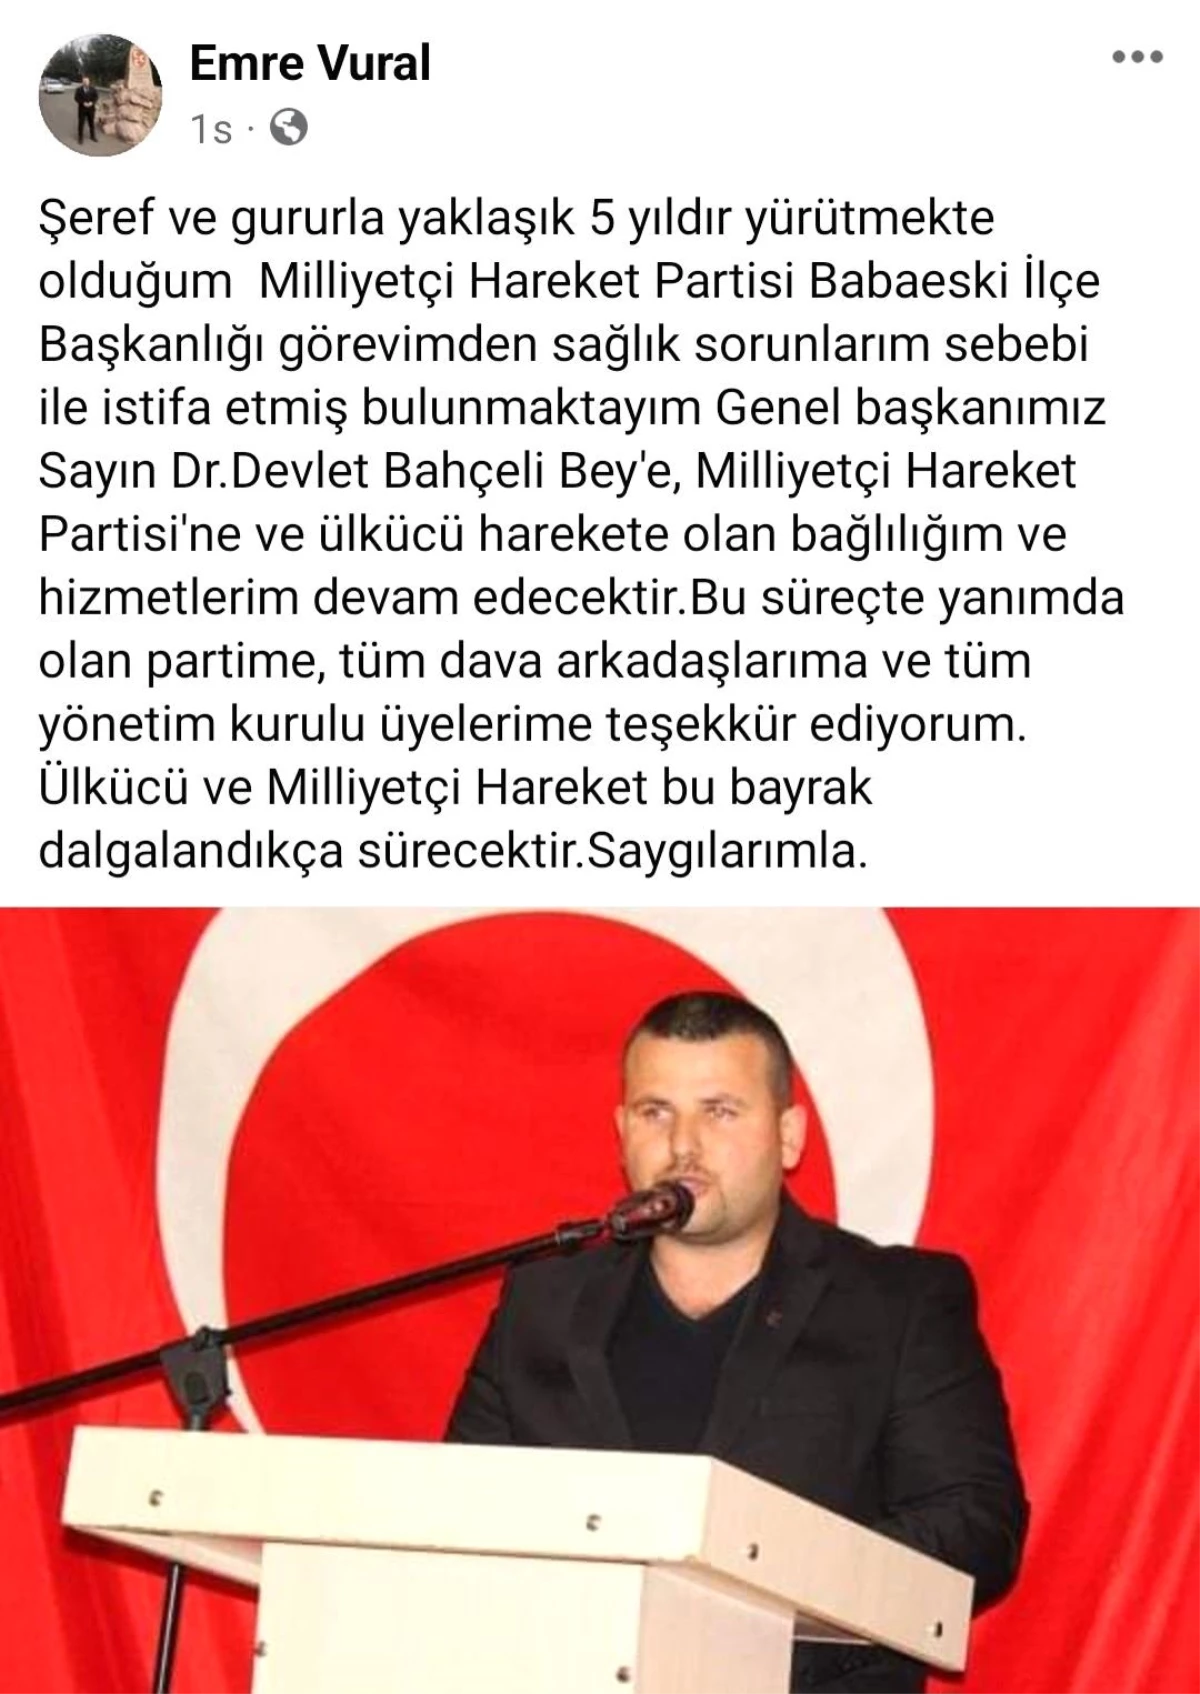 MHP Babaeski İlçe Başkanı Emre Vural, sağlık sorunları nedeniyle istifa etti